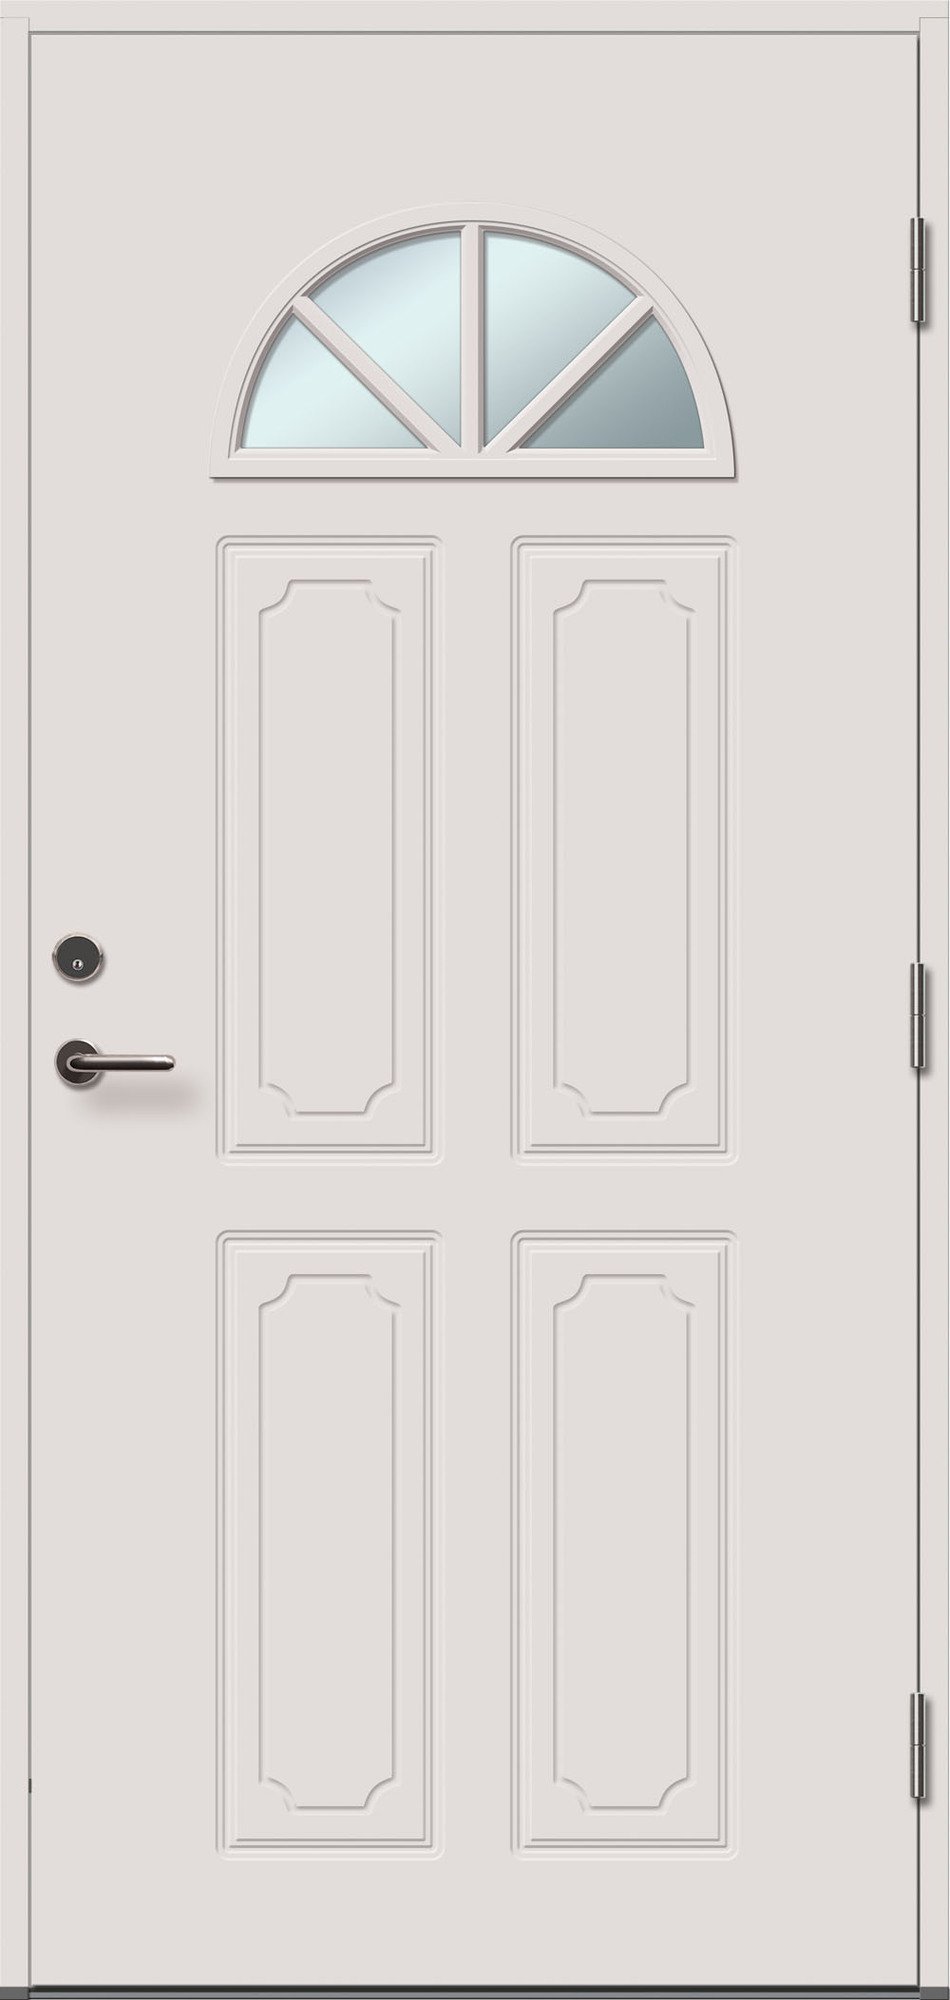 Lauko durys VILJANDI AMALIA 4RK, balta sp., 990 x 2088 mm, dešinė